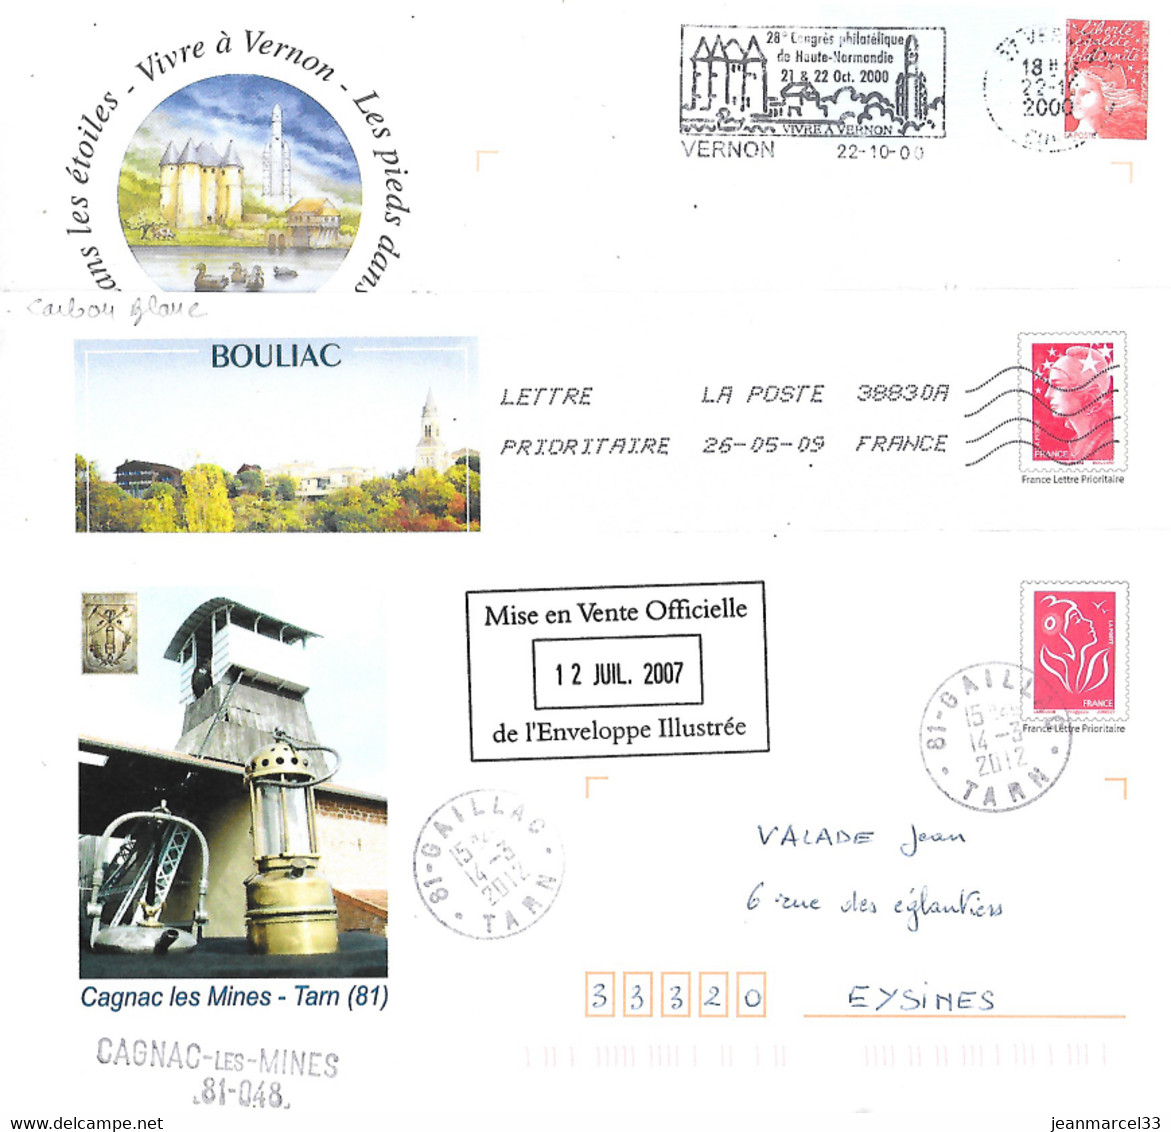 Pres à Poster Illustrés 3 Enveloppes De 81 Gaillac, 33 Bouillac Et 27 Vernon - Prêts-à-poster:Overprinting/Beaujard